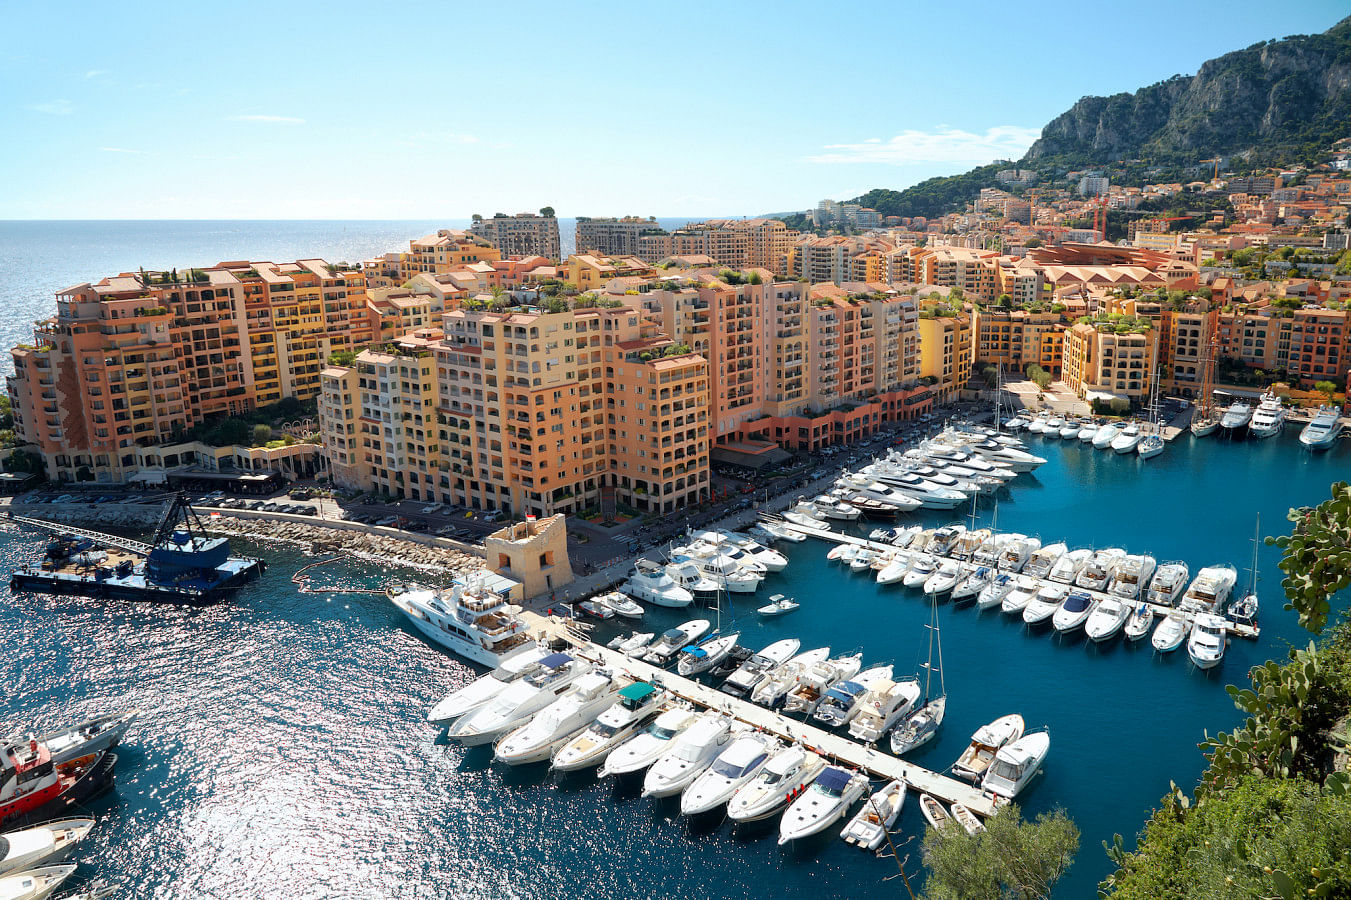 Alugar um barco em Monaco